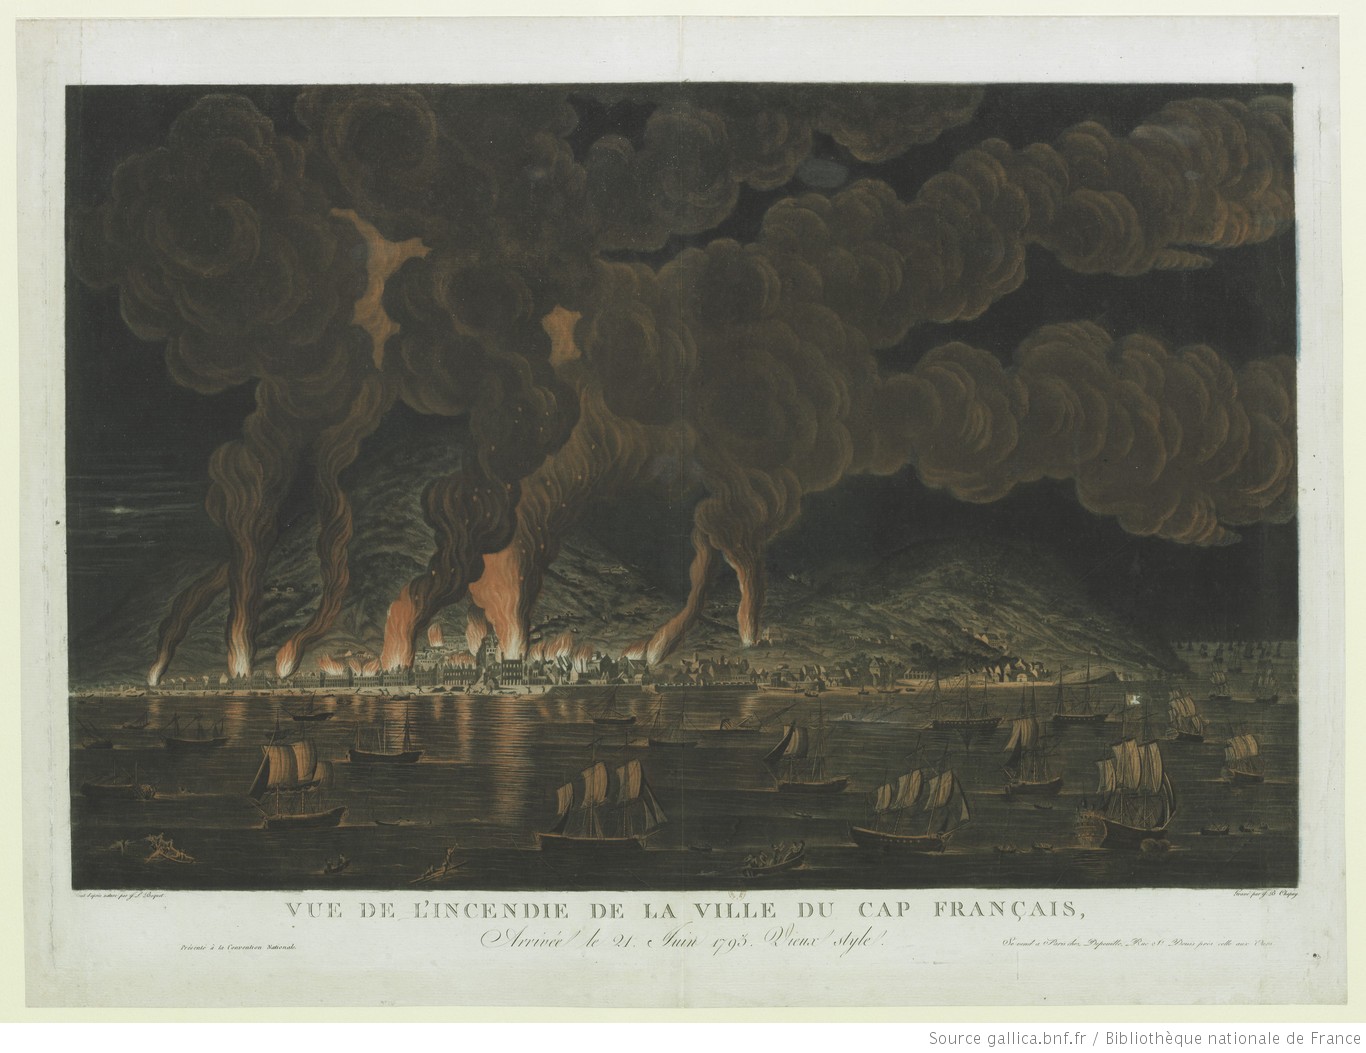 View of the Burning of Cap-Français, by J.L. Boquet, 1794. Bibliothèque nationale de France.